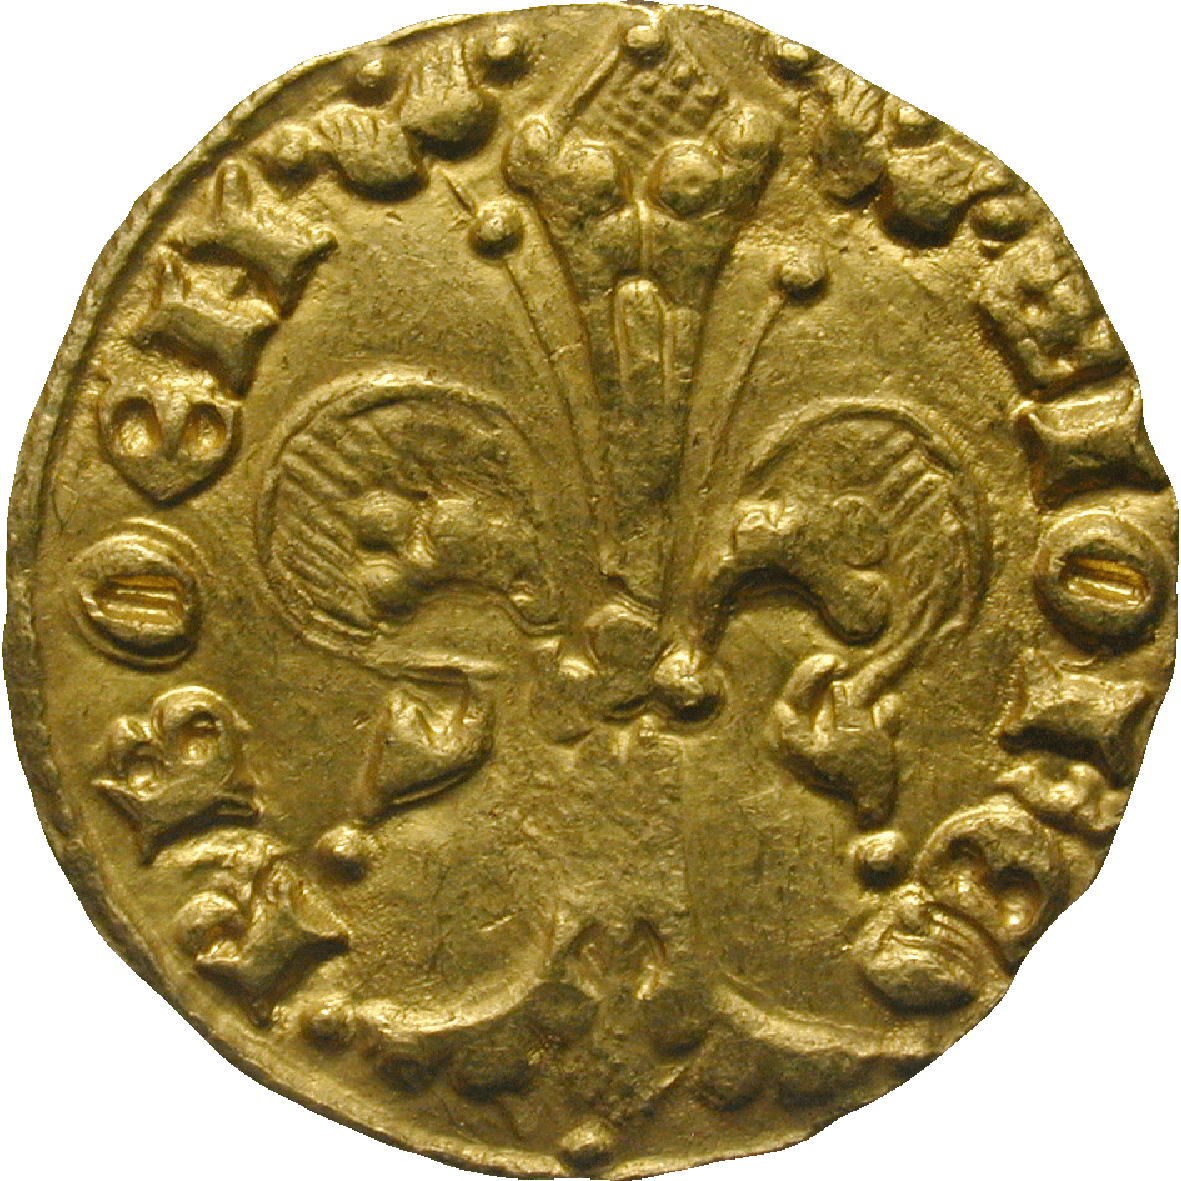 Königreich Böhmen, Johann von Luxemburg, Goldgulden (obverse)